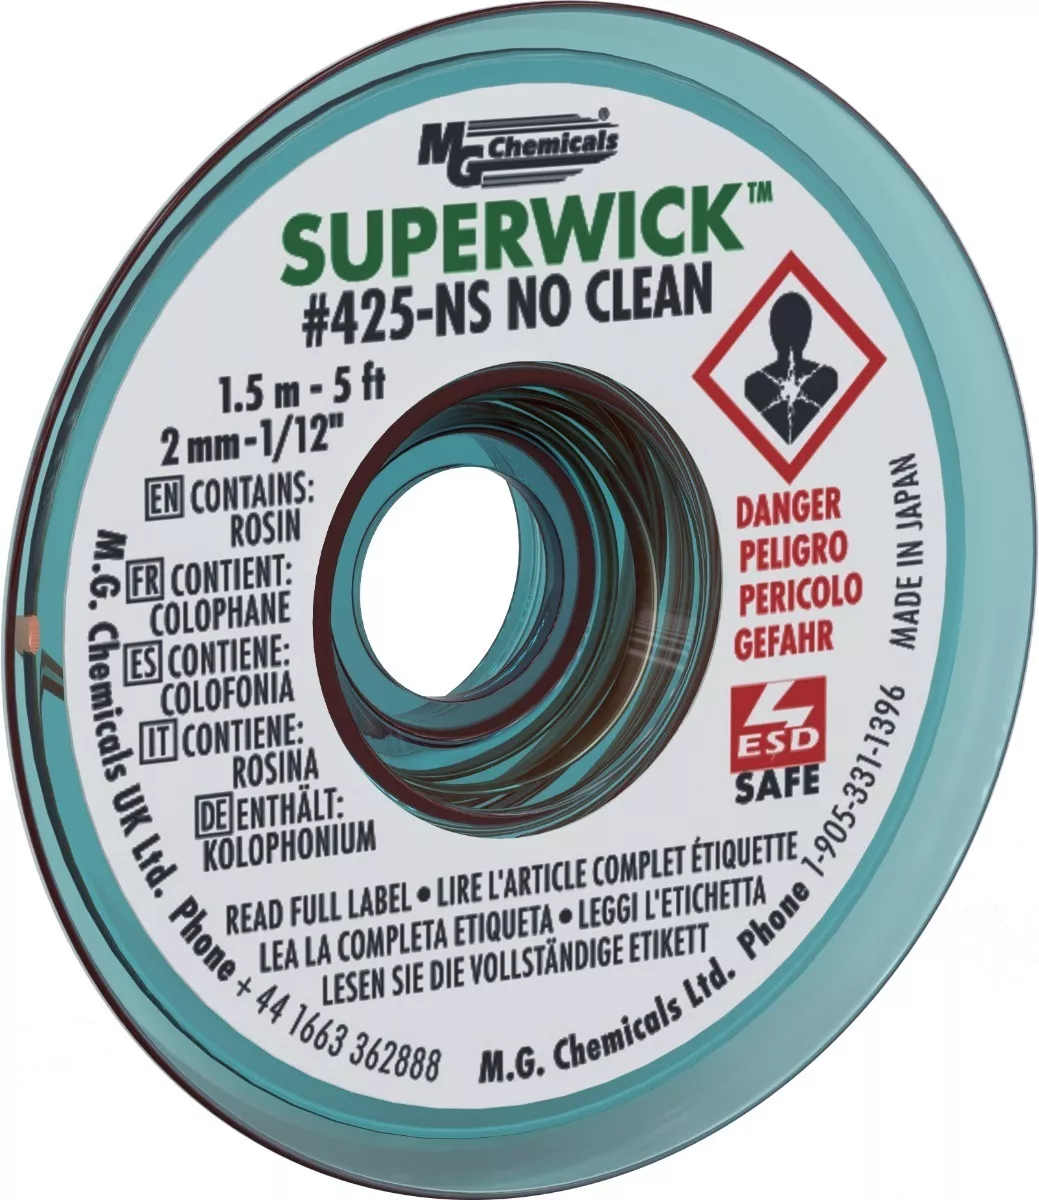 Mg Chemicals-trenza Desoldadora 425-ns-no Clean Super Wick